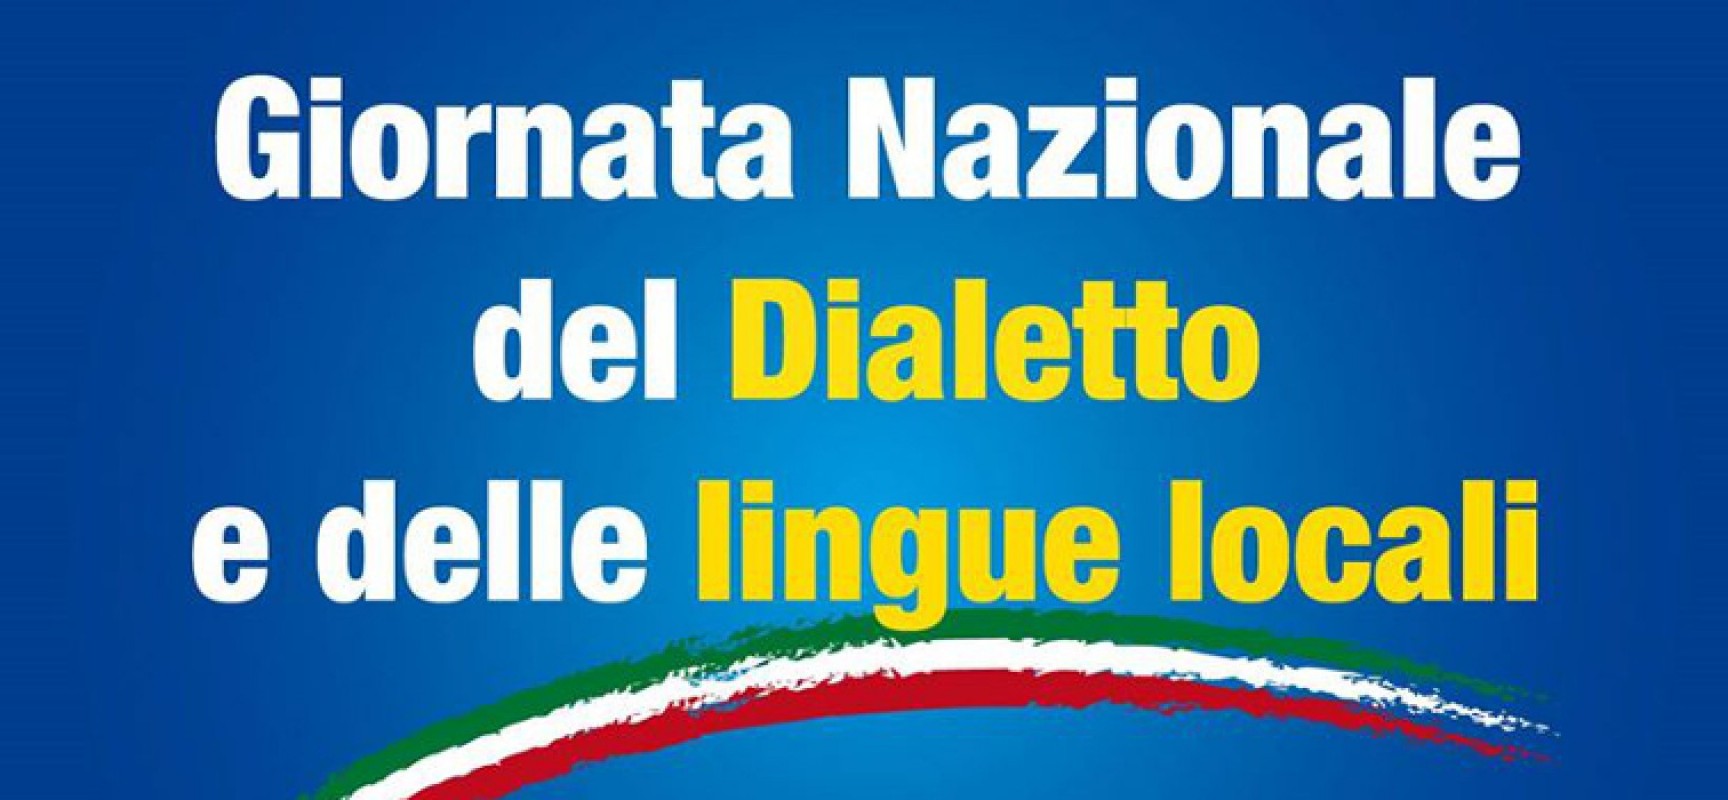 Giornata nazionale del dialetto, “La Canigghie” e Pro Loco insieme per l’edizione 2017 / PROGRAMMA